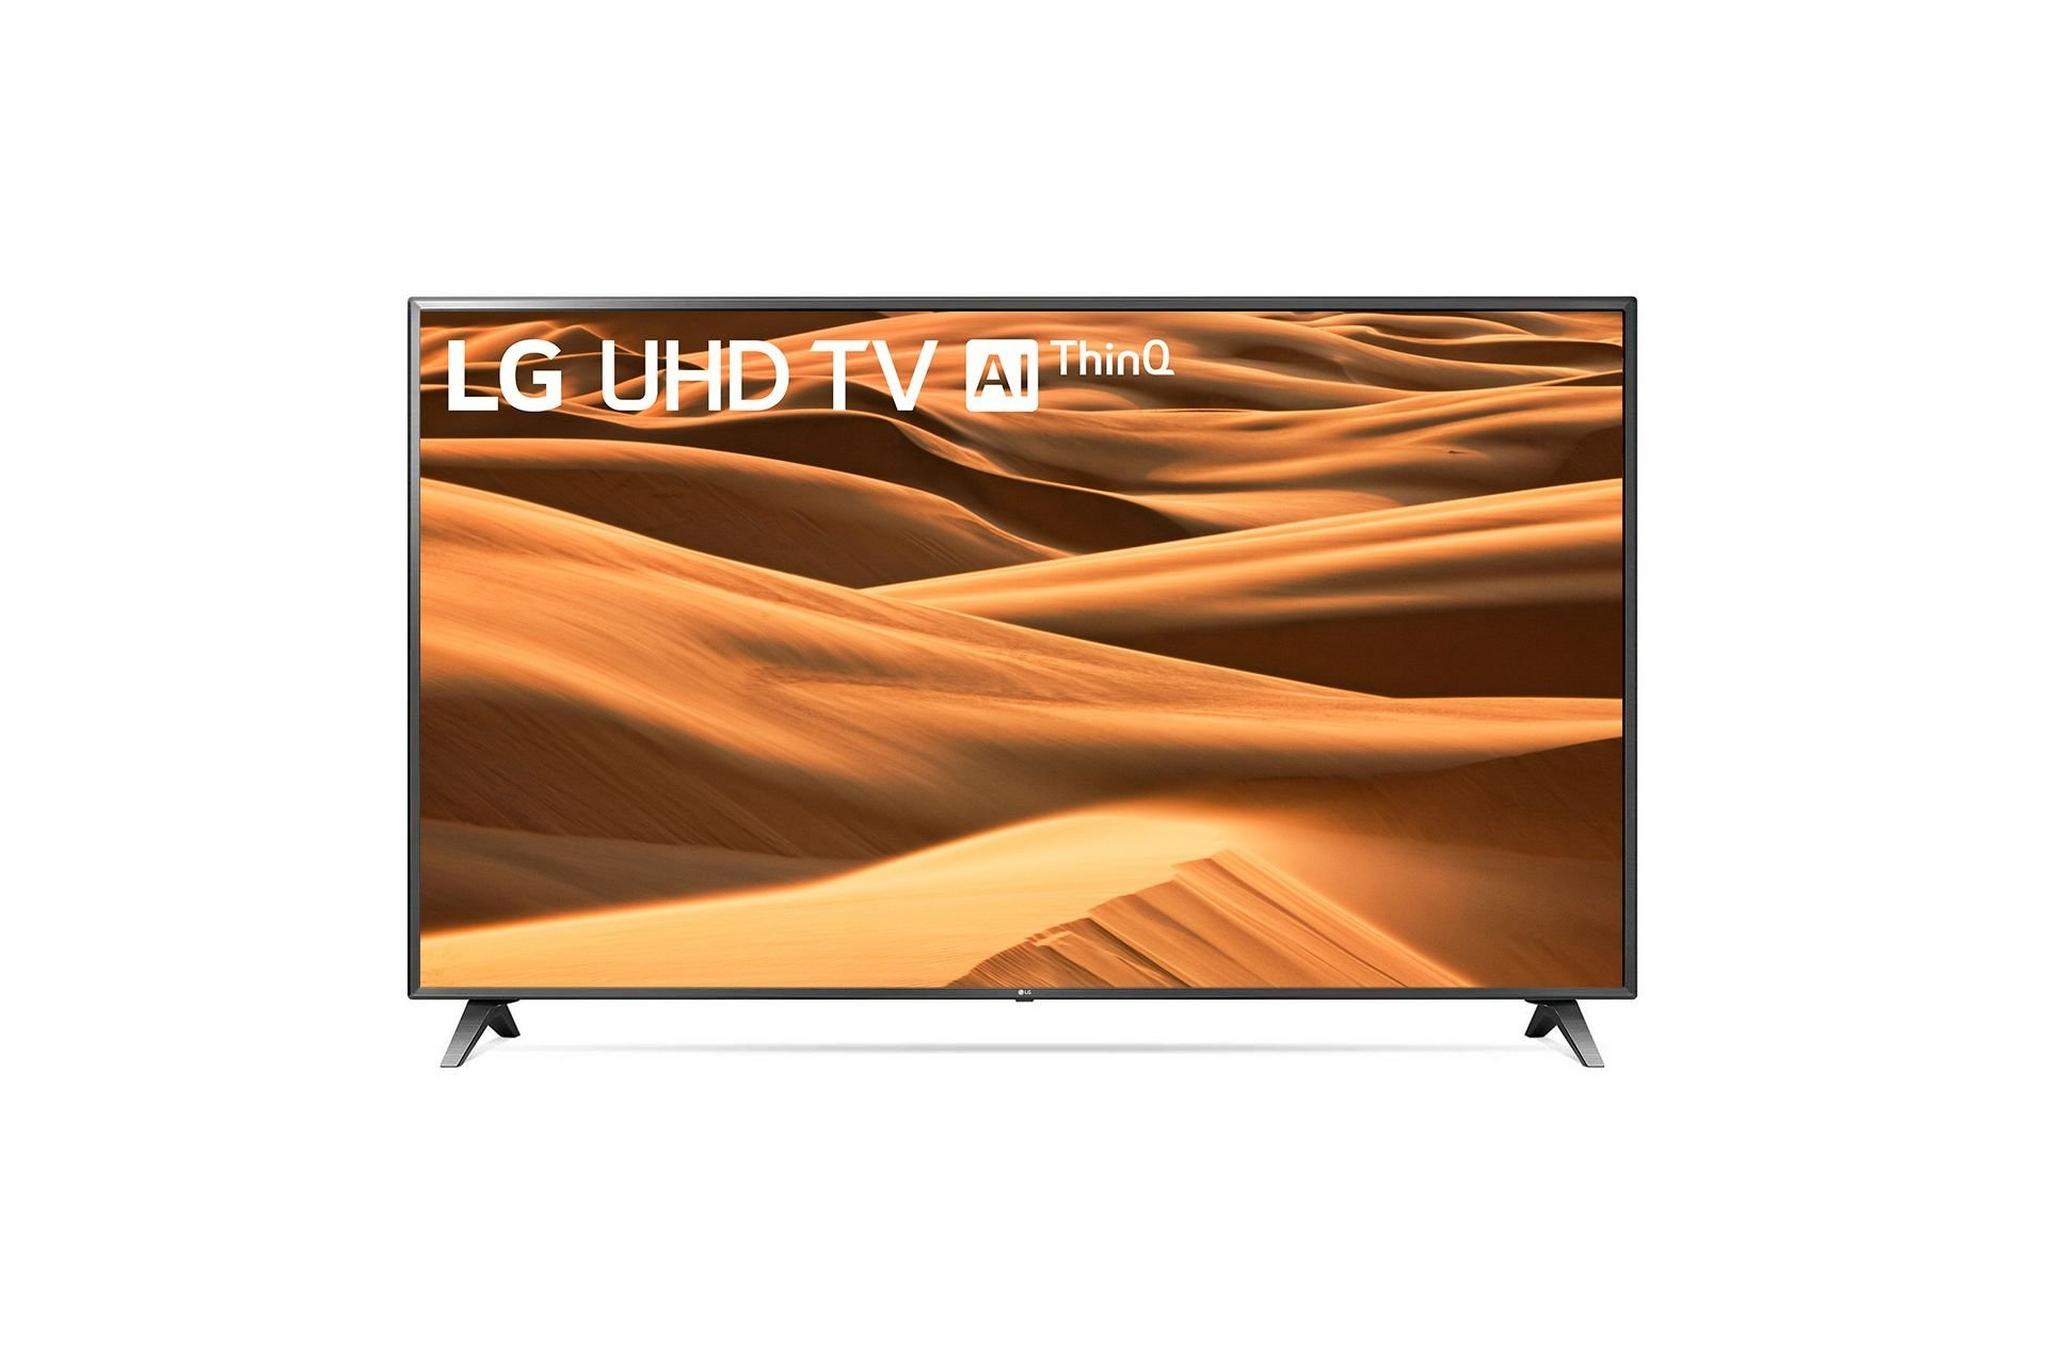 LG 86-inch 4K Ultra JD Smart LED TV - 86UM7580PVA